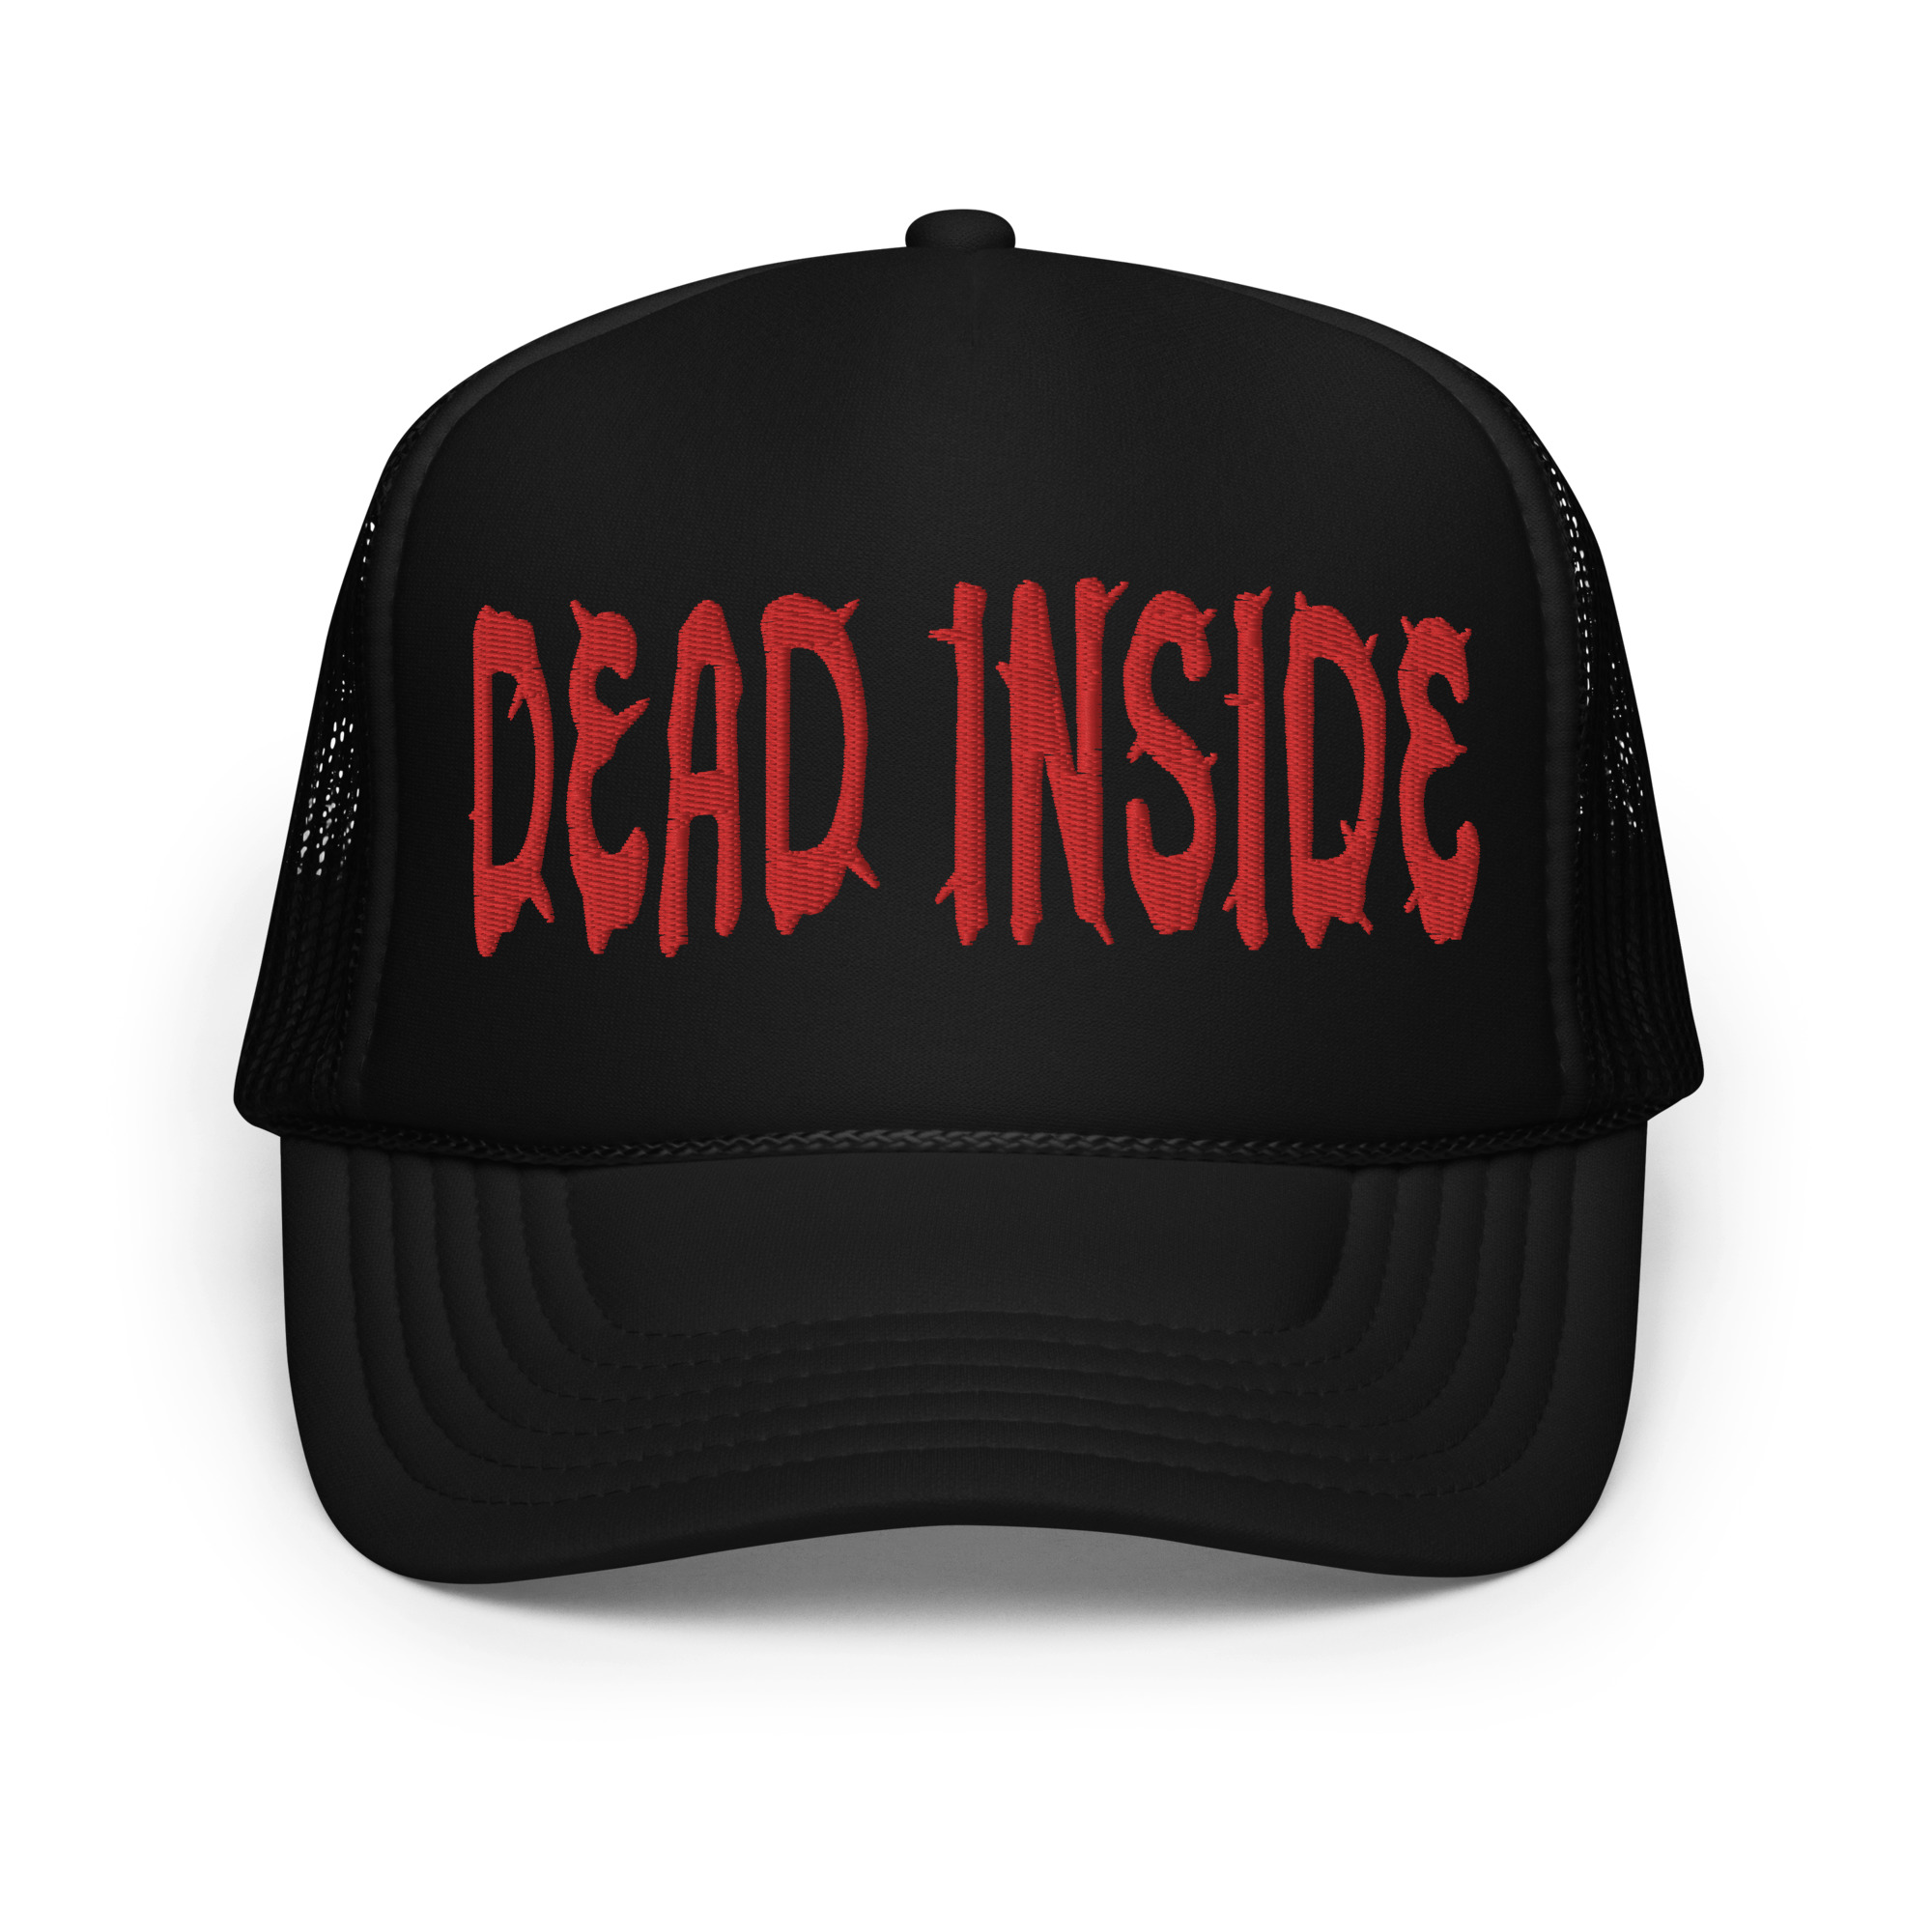 Featured image for “Dead Inside - Foam trucker hat”